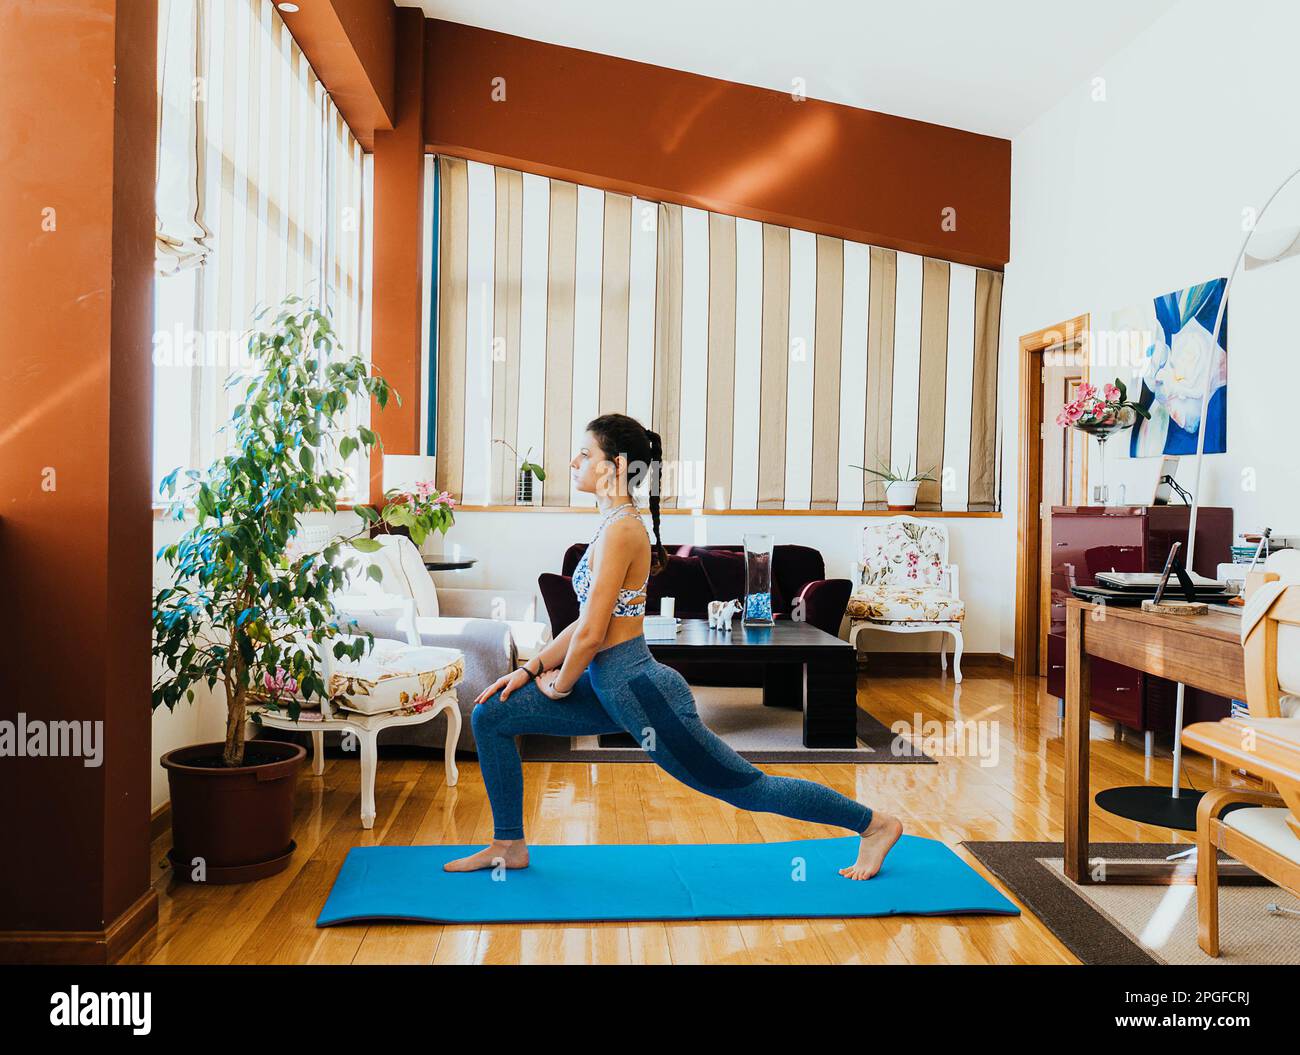 ritratto della donna che fa esercizi, yoga e stretching a casa Foto Stock